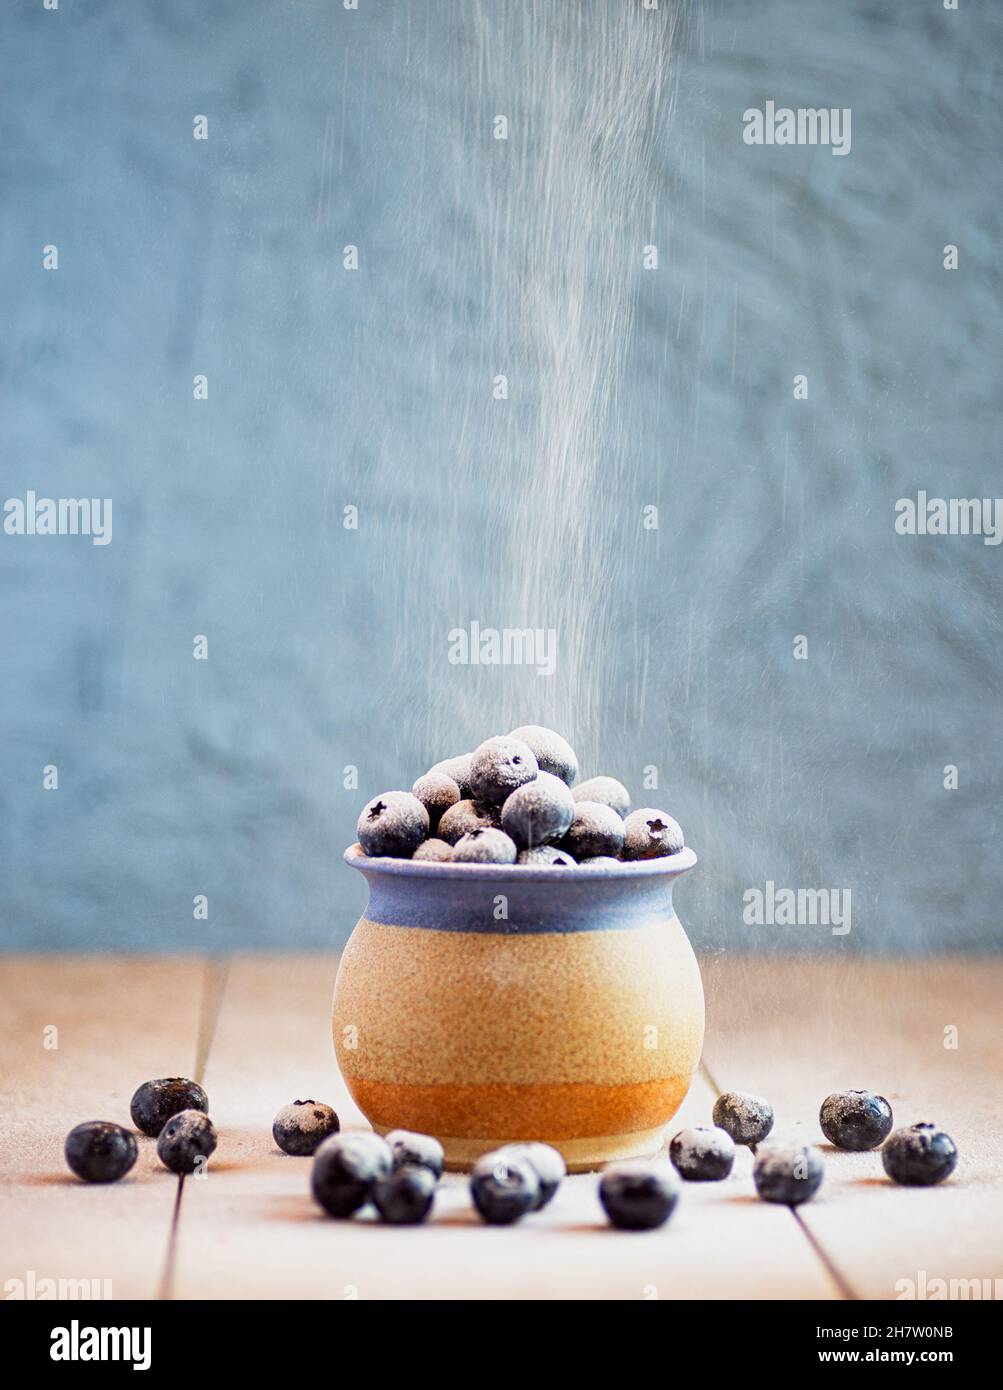 Une tasse en grès remplie de bleuets sur une surface en céramique.Poudre à épousseter tamisée sur les baies Banque D'Images